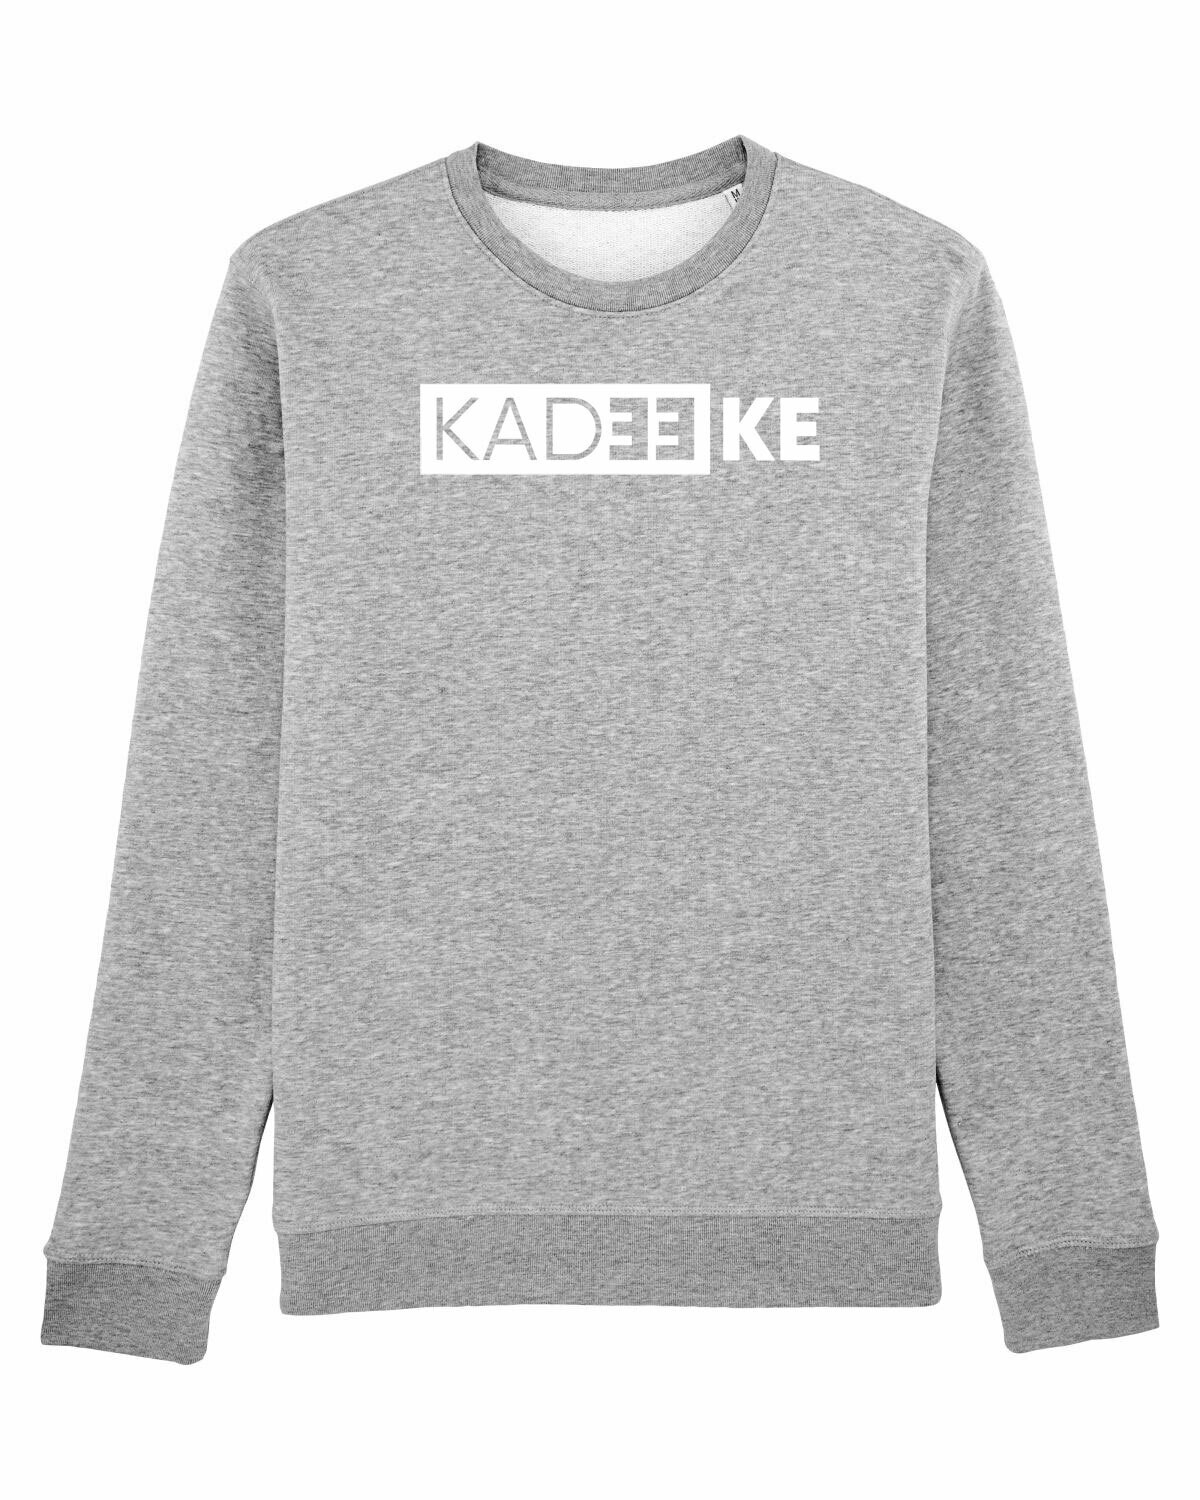 Sweater Kadeeke